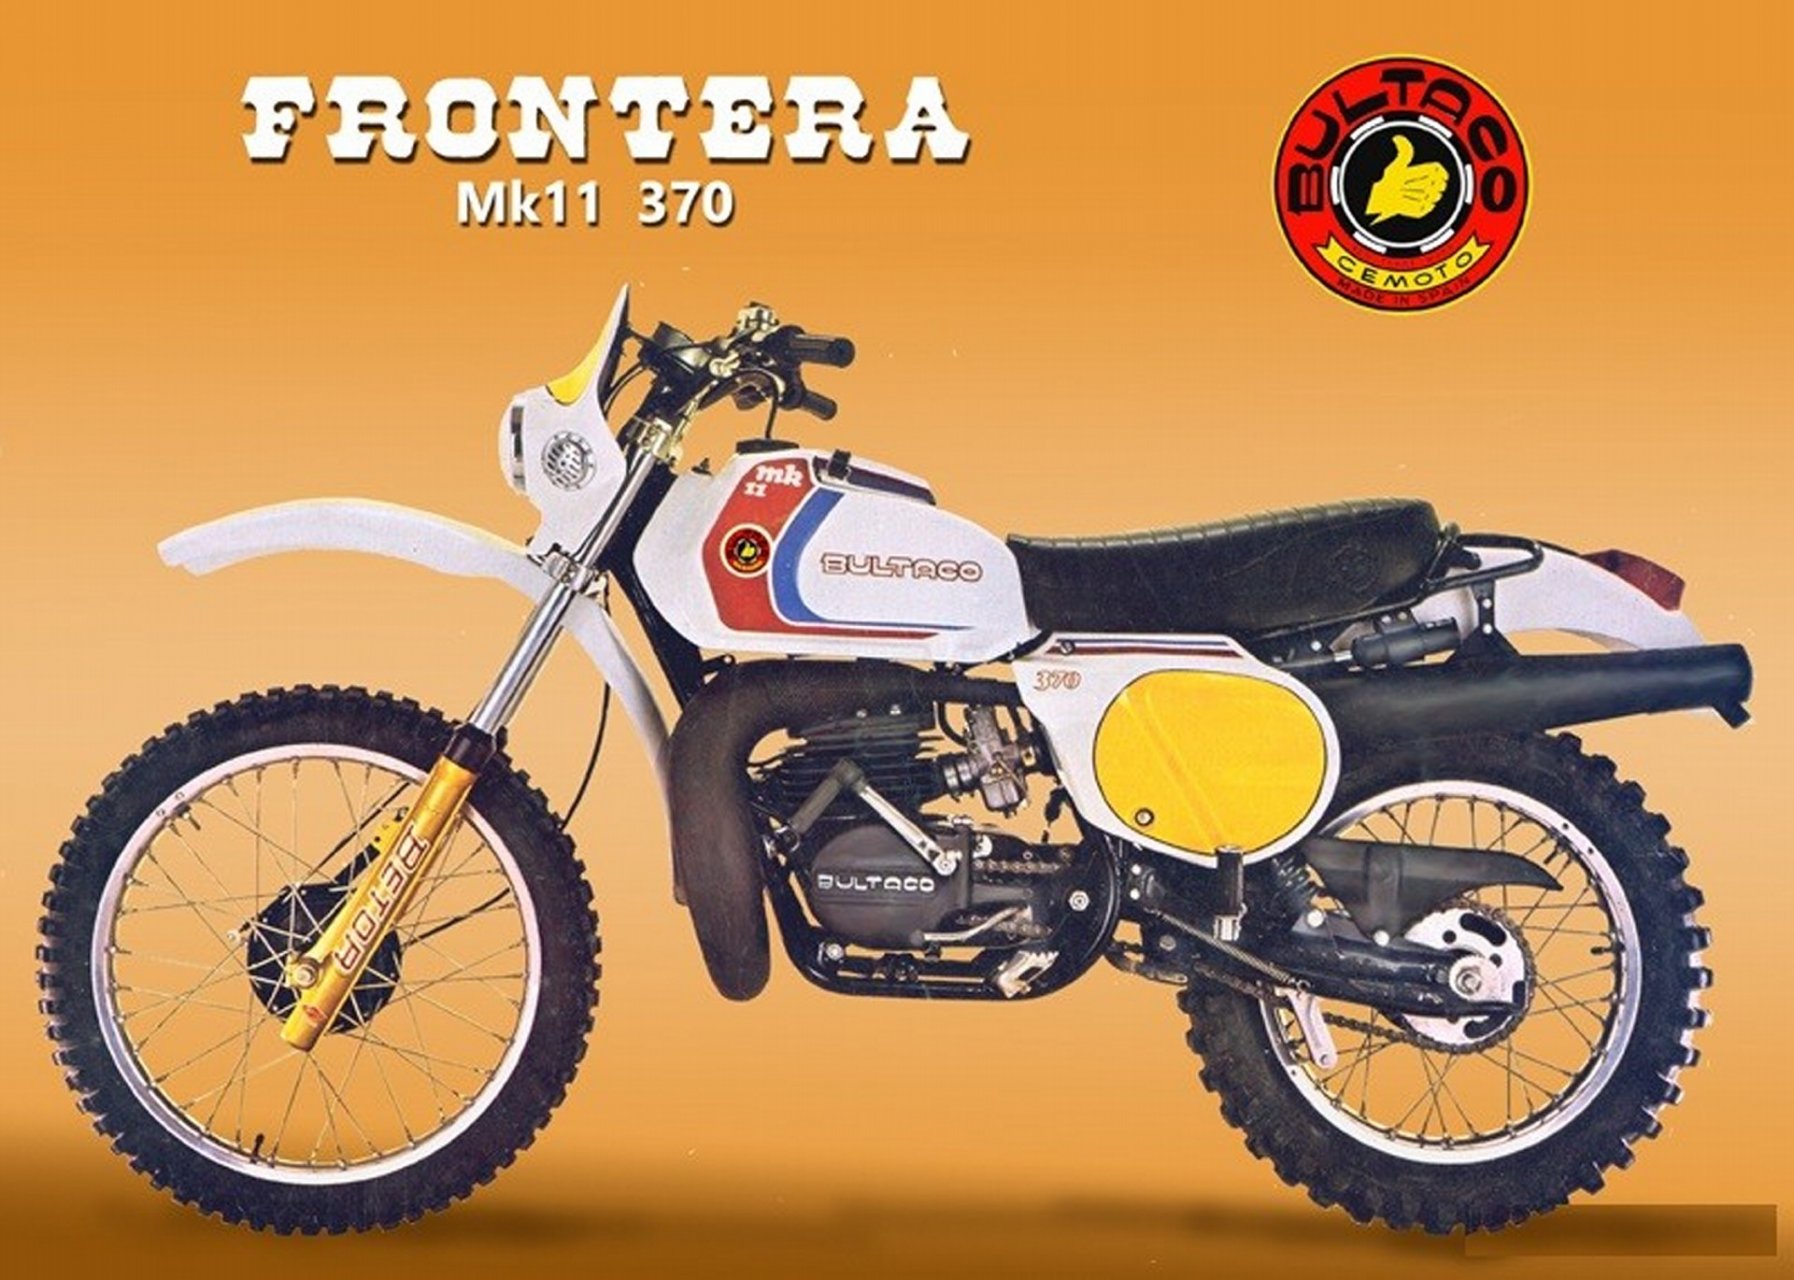 Moto del día: Bultaco Frontera